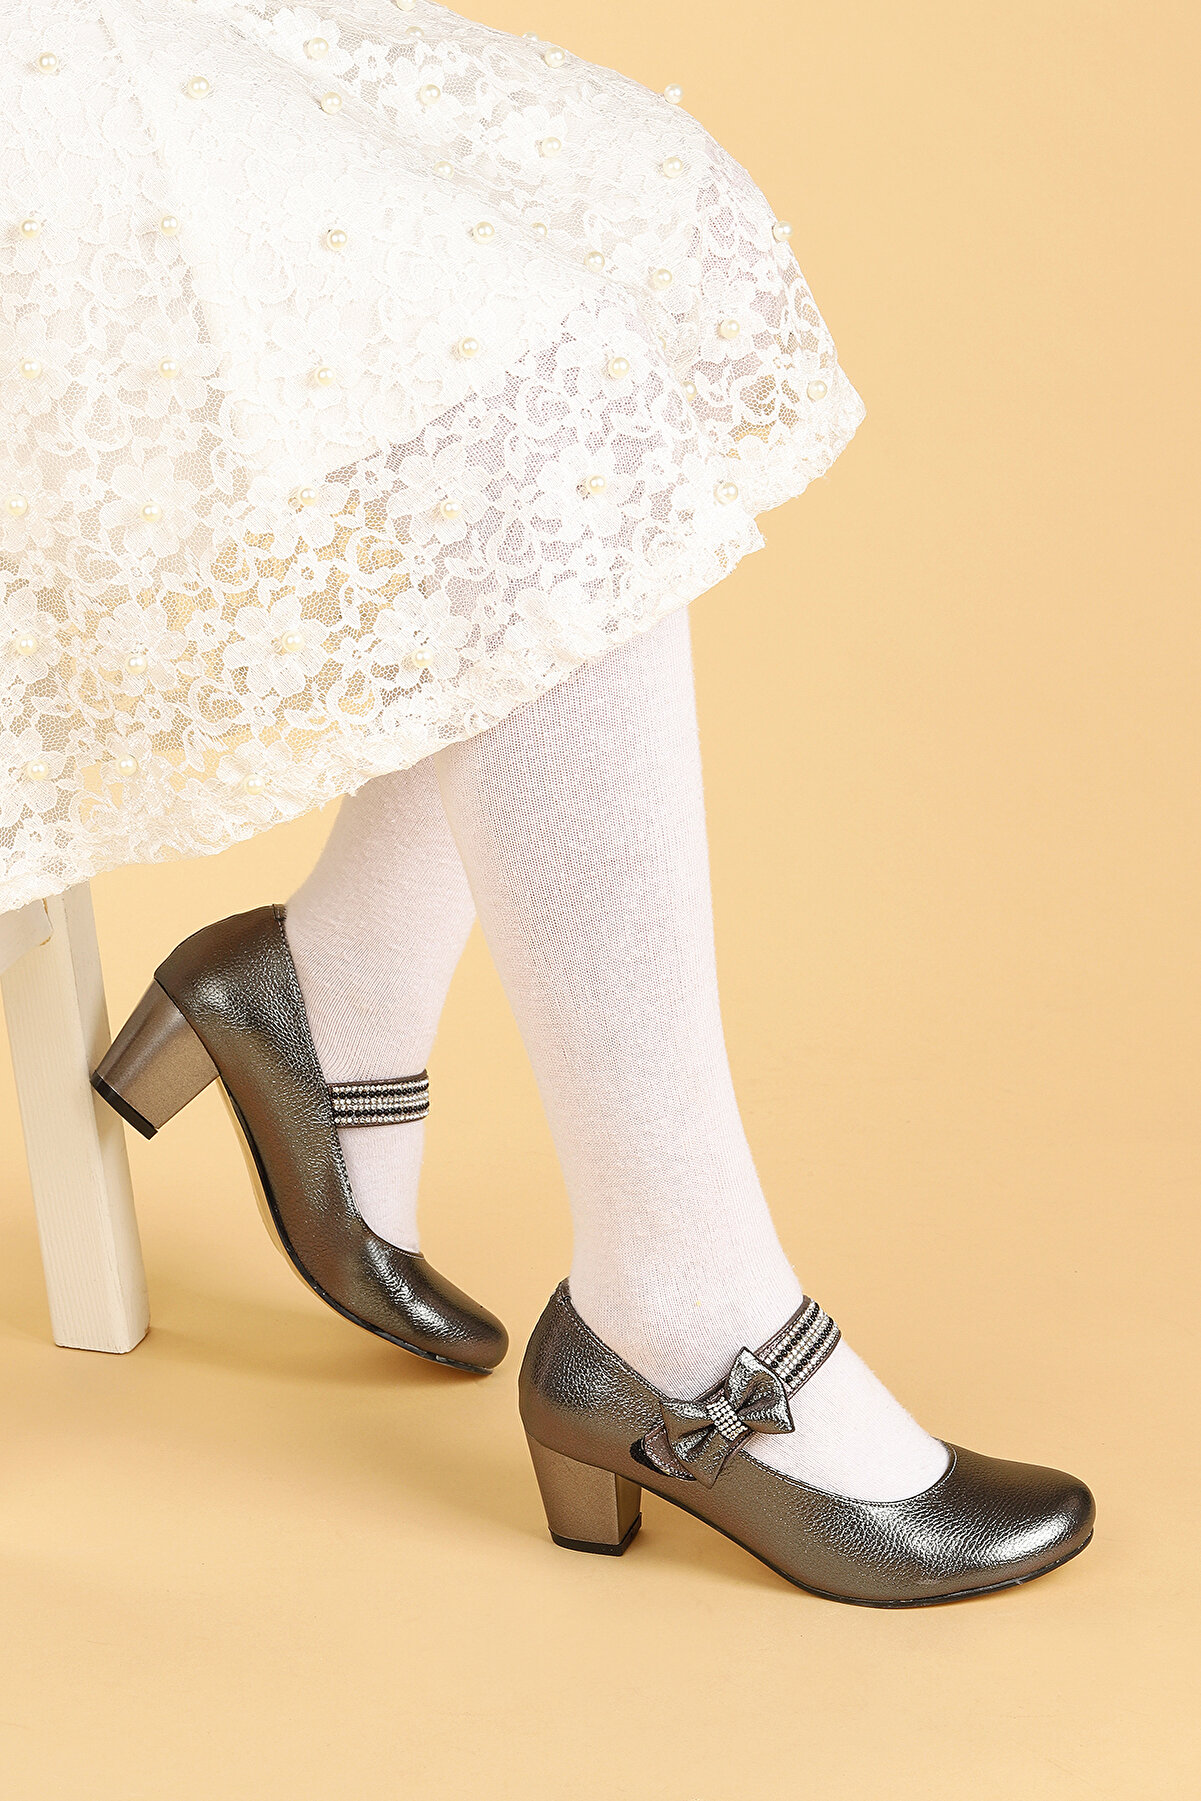 Kiko Kids Kız Çocuk Platin Taşlı Fiyonklu 4 Cm Topuklu Abiye Ayakkabı Bilekten Bantlı Vakko 752